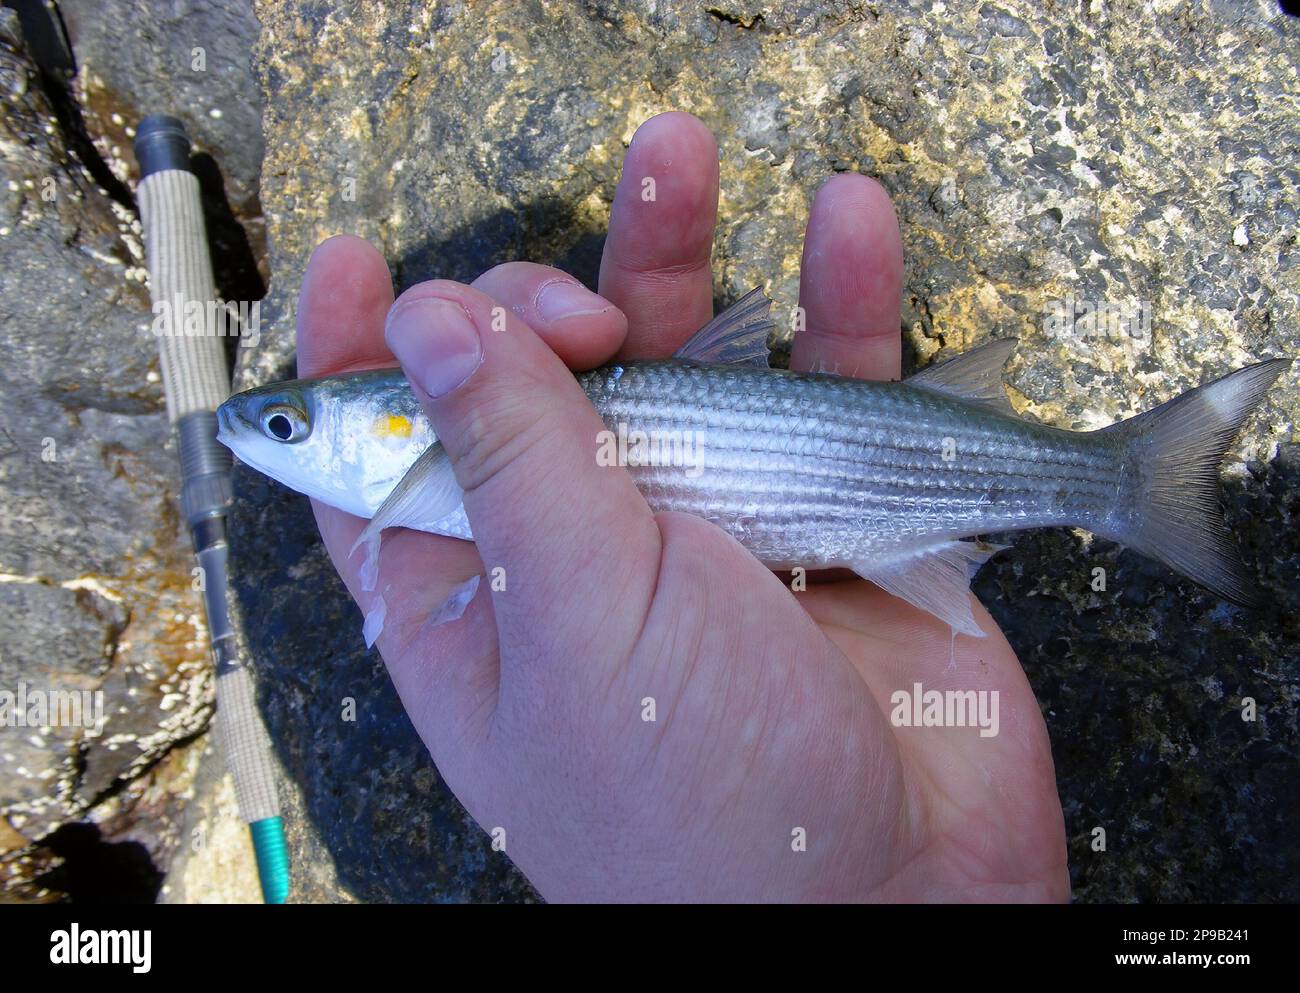 La triglia grigia dorata (Chelon aurata) è un pesce della famiglia Mugilidae. Pesce pescato al largo della costa della Spagna. Foto Stock